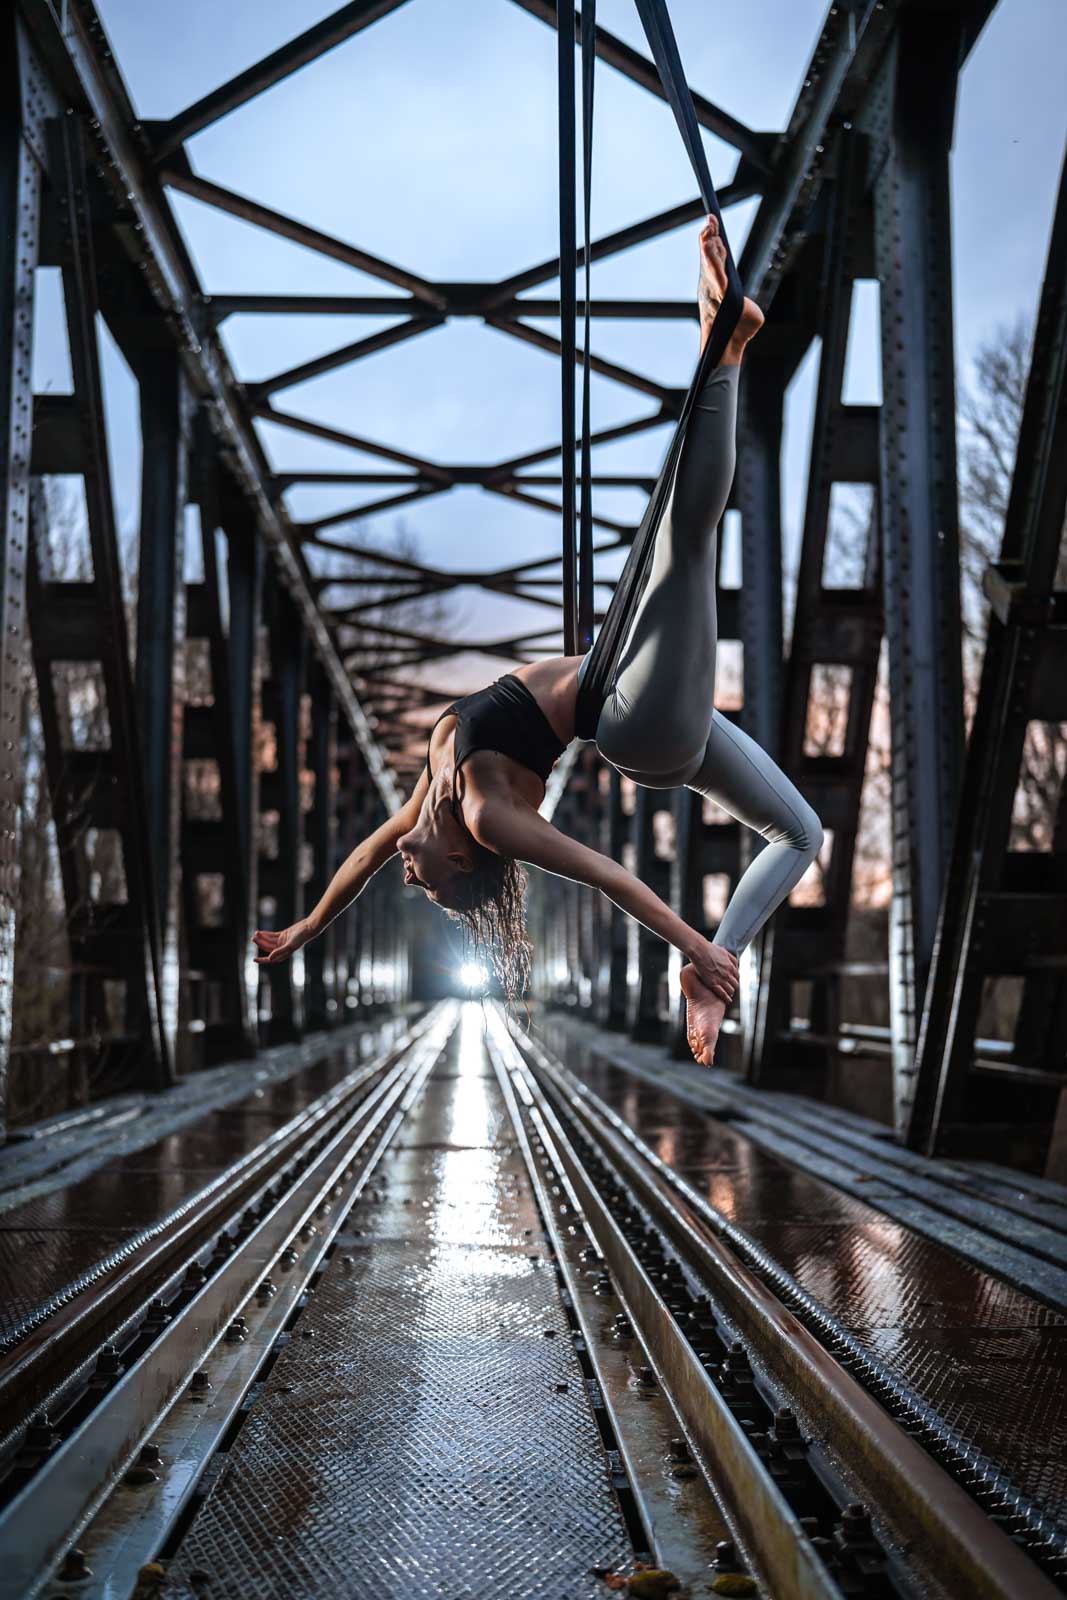 Aerial-Straps Akrobatin an einer verlassenen Eisenbahn-Brücke